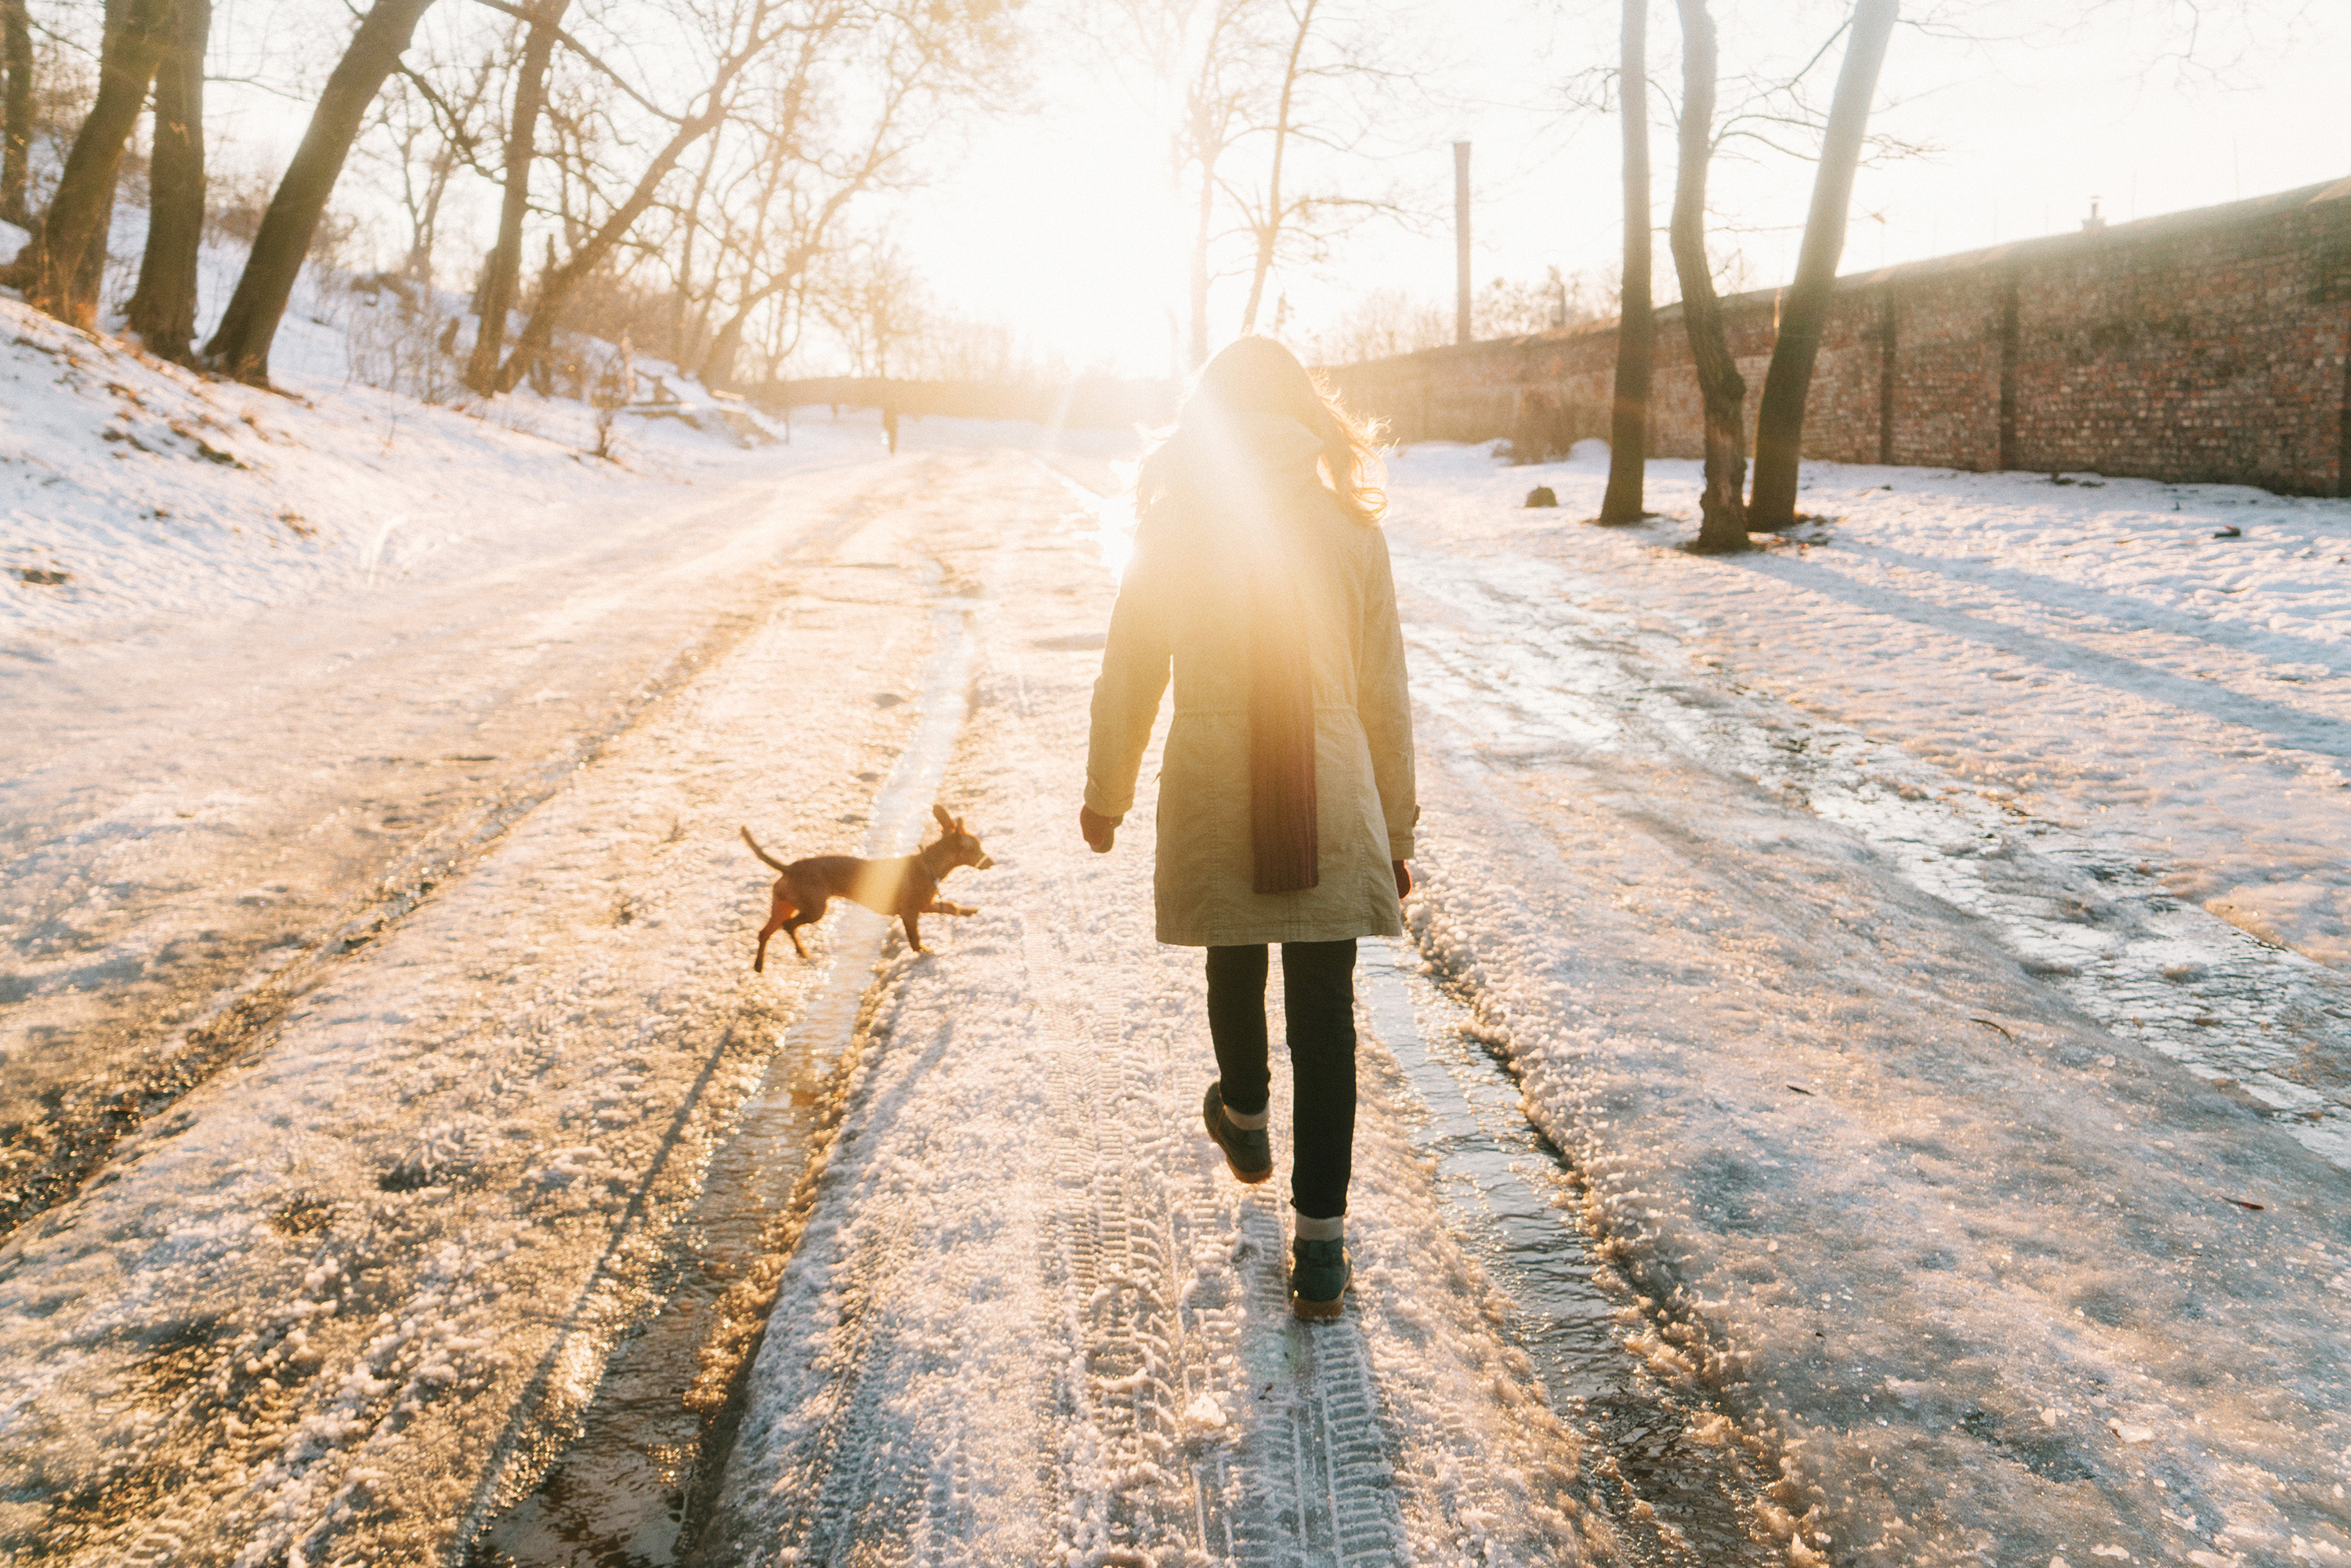 Nainen ja koira kulkevat lumista tietä pitkin selkä kameraan päin. Heidän kulkusuunnassaan on puita ja taiv...